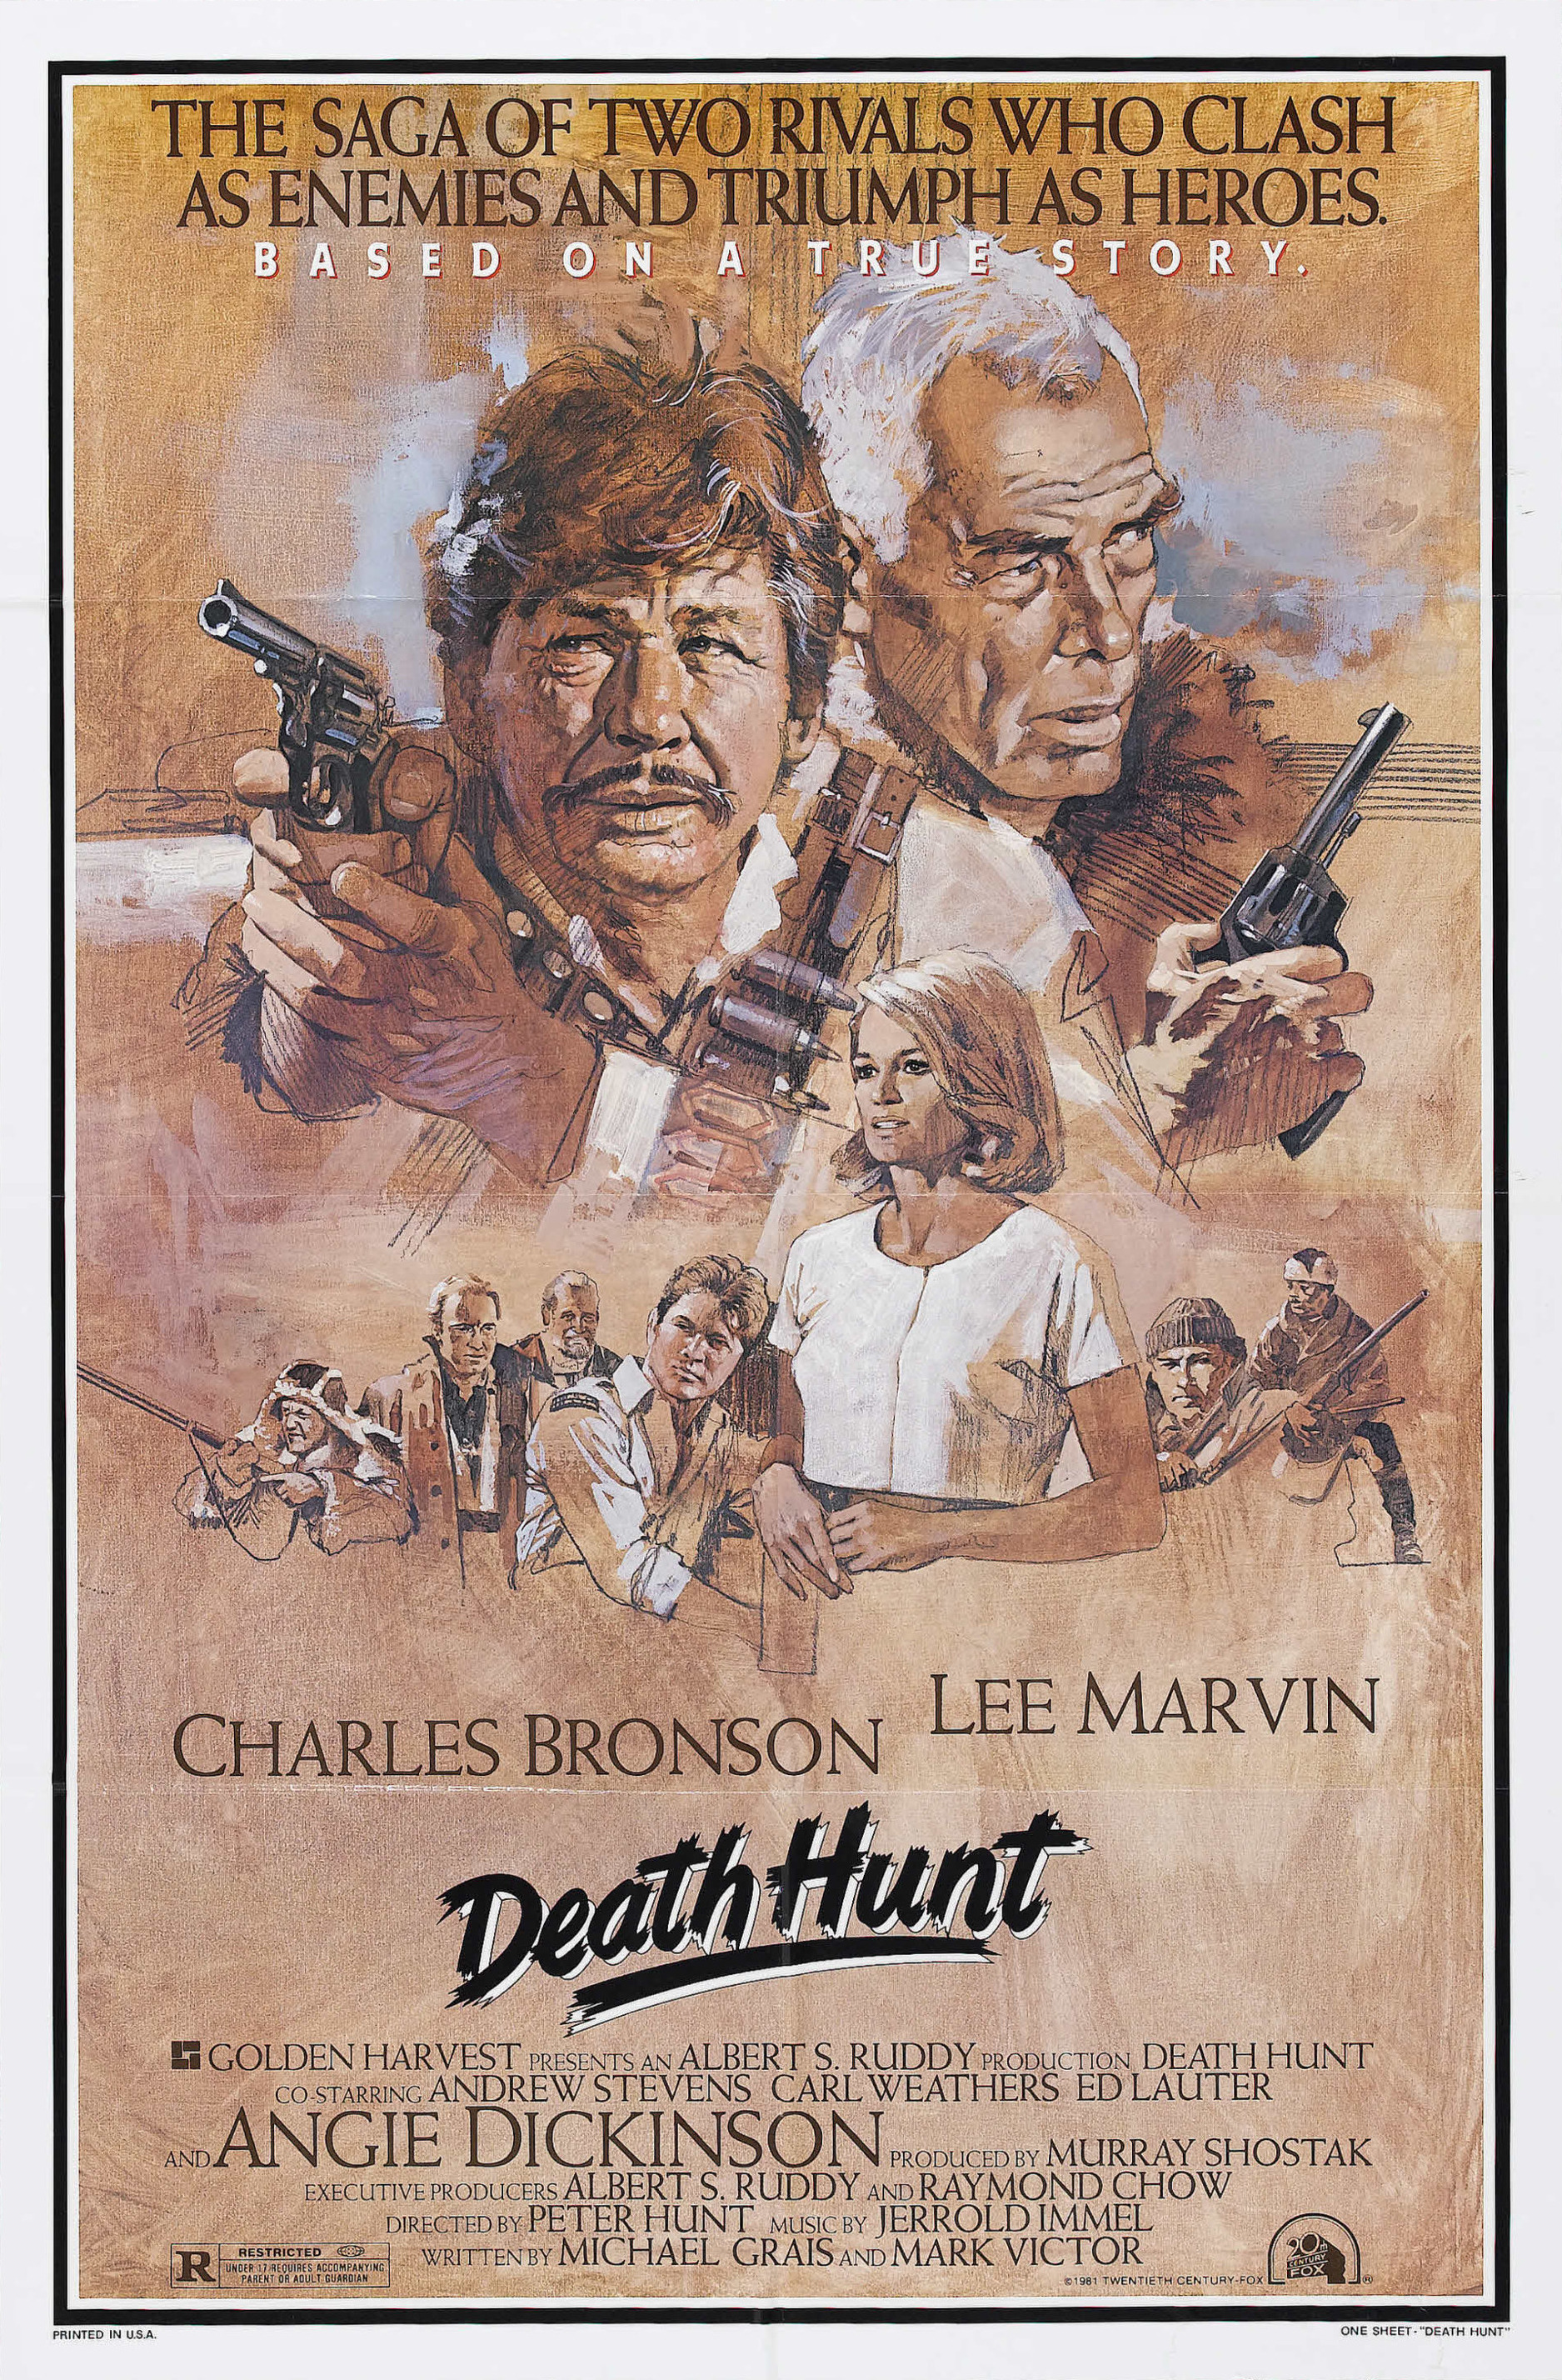 Mega Sized Movie Poster Image for Death Hunt 